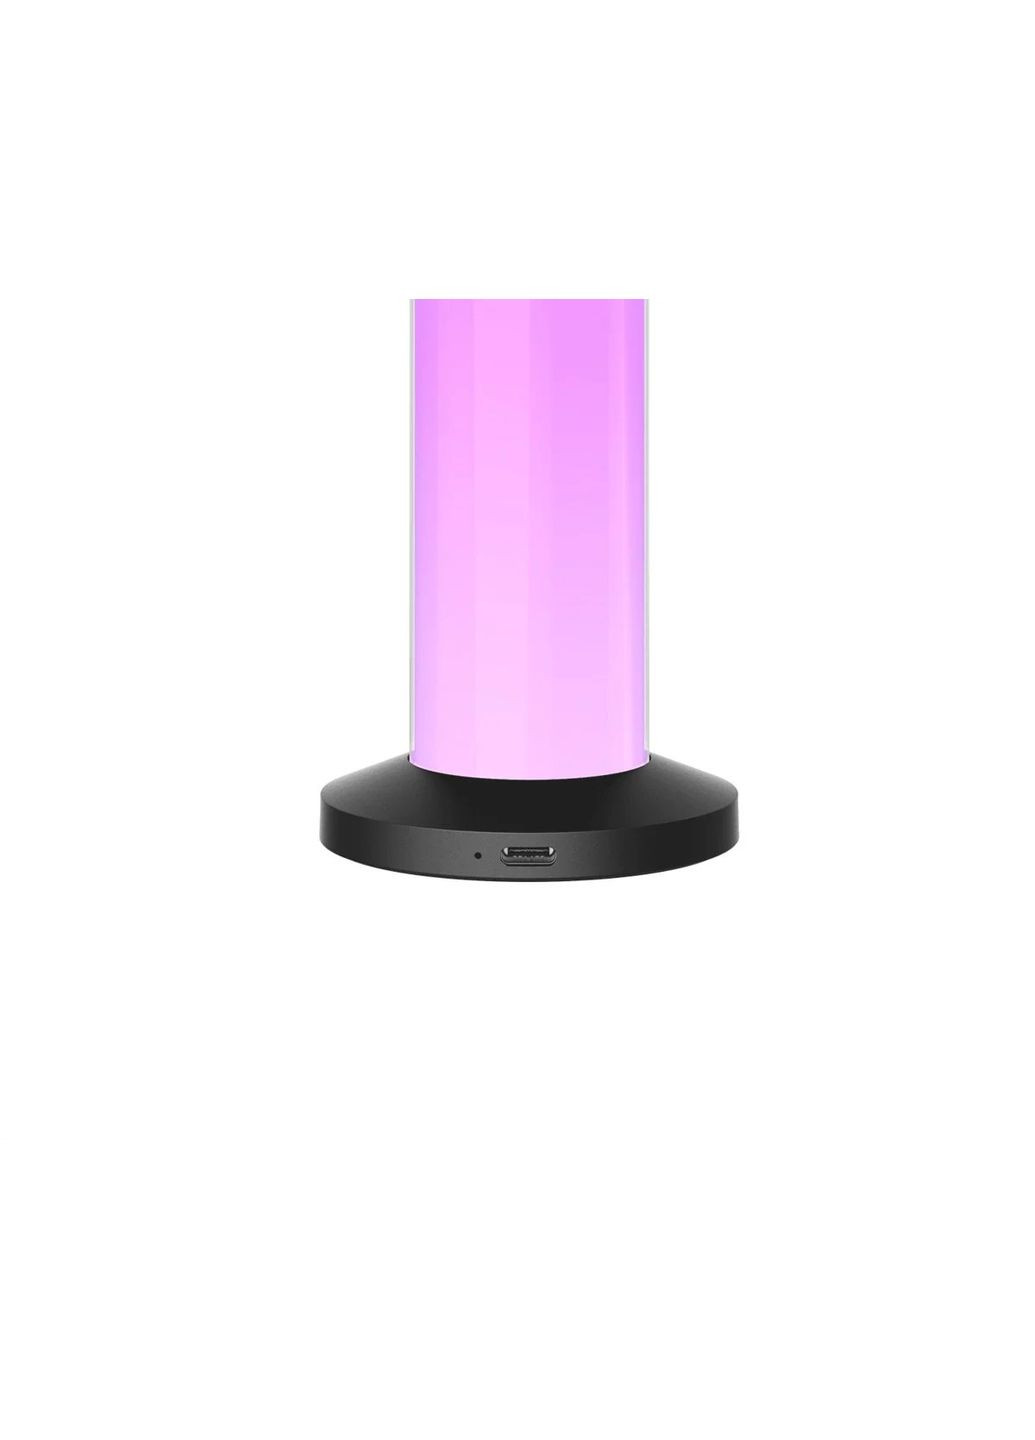 Умная лампа Rechargeable Atmosphere tablelamp YLYTD0015 (темно-серая) Yeelight (293345417)